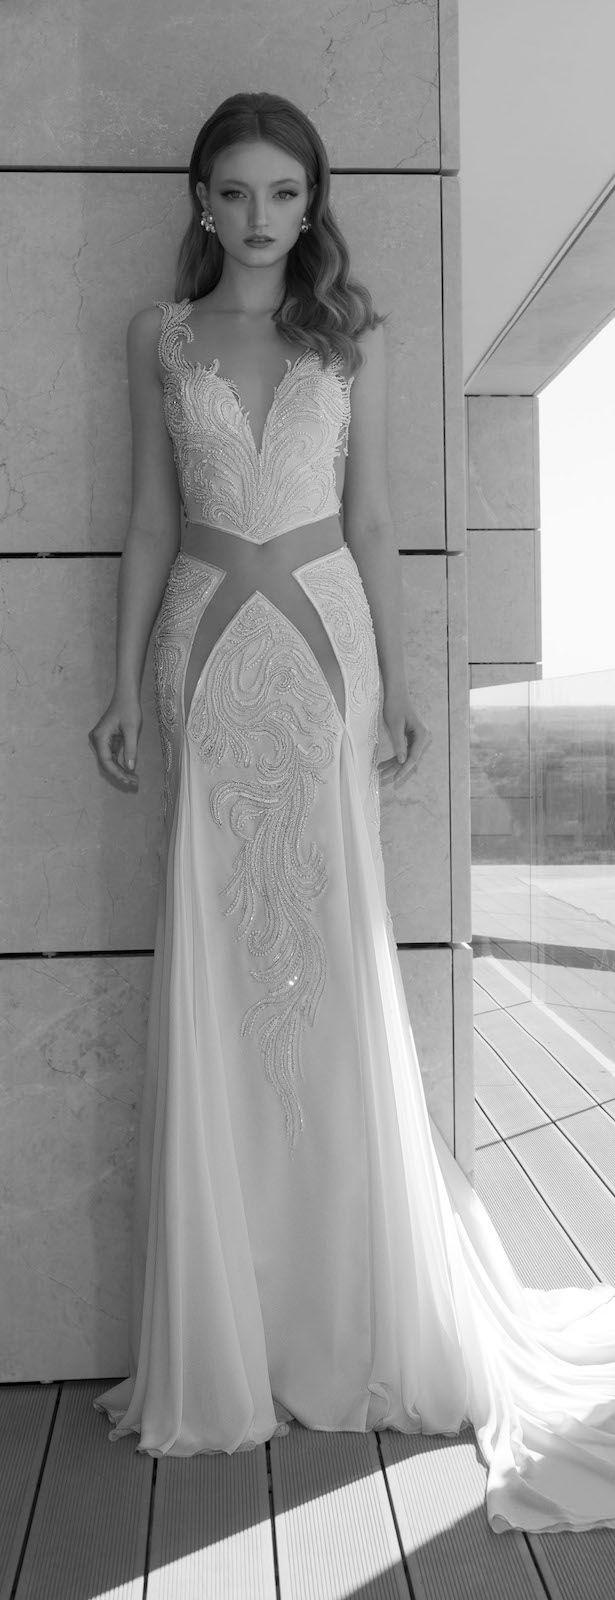 زفاف - Wedding Dress by Dany Mizrachi